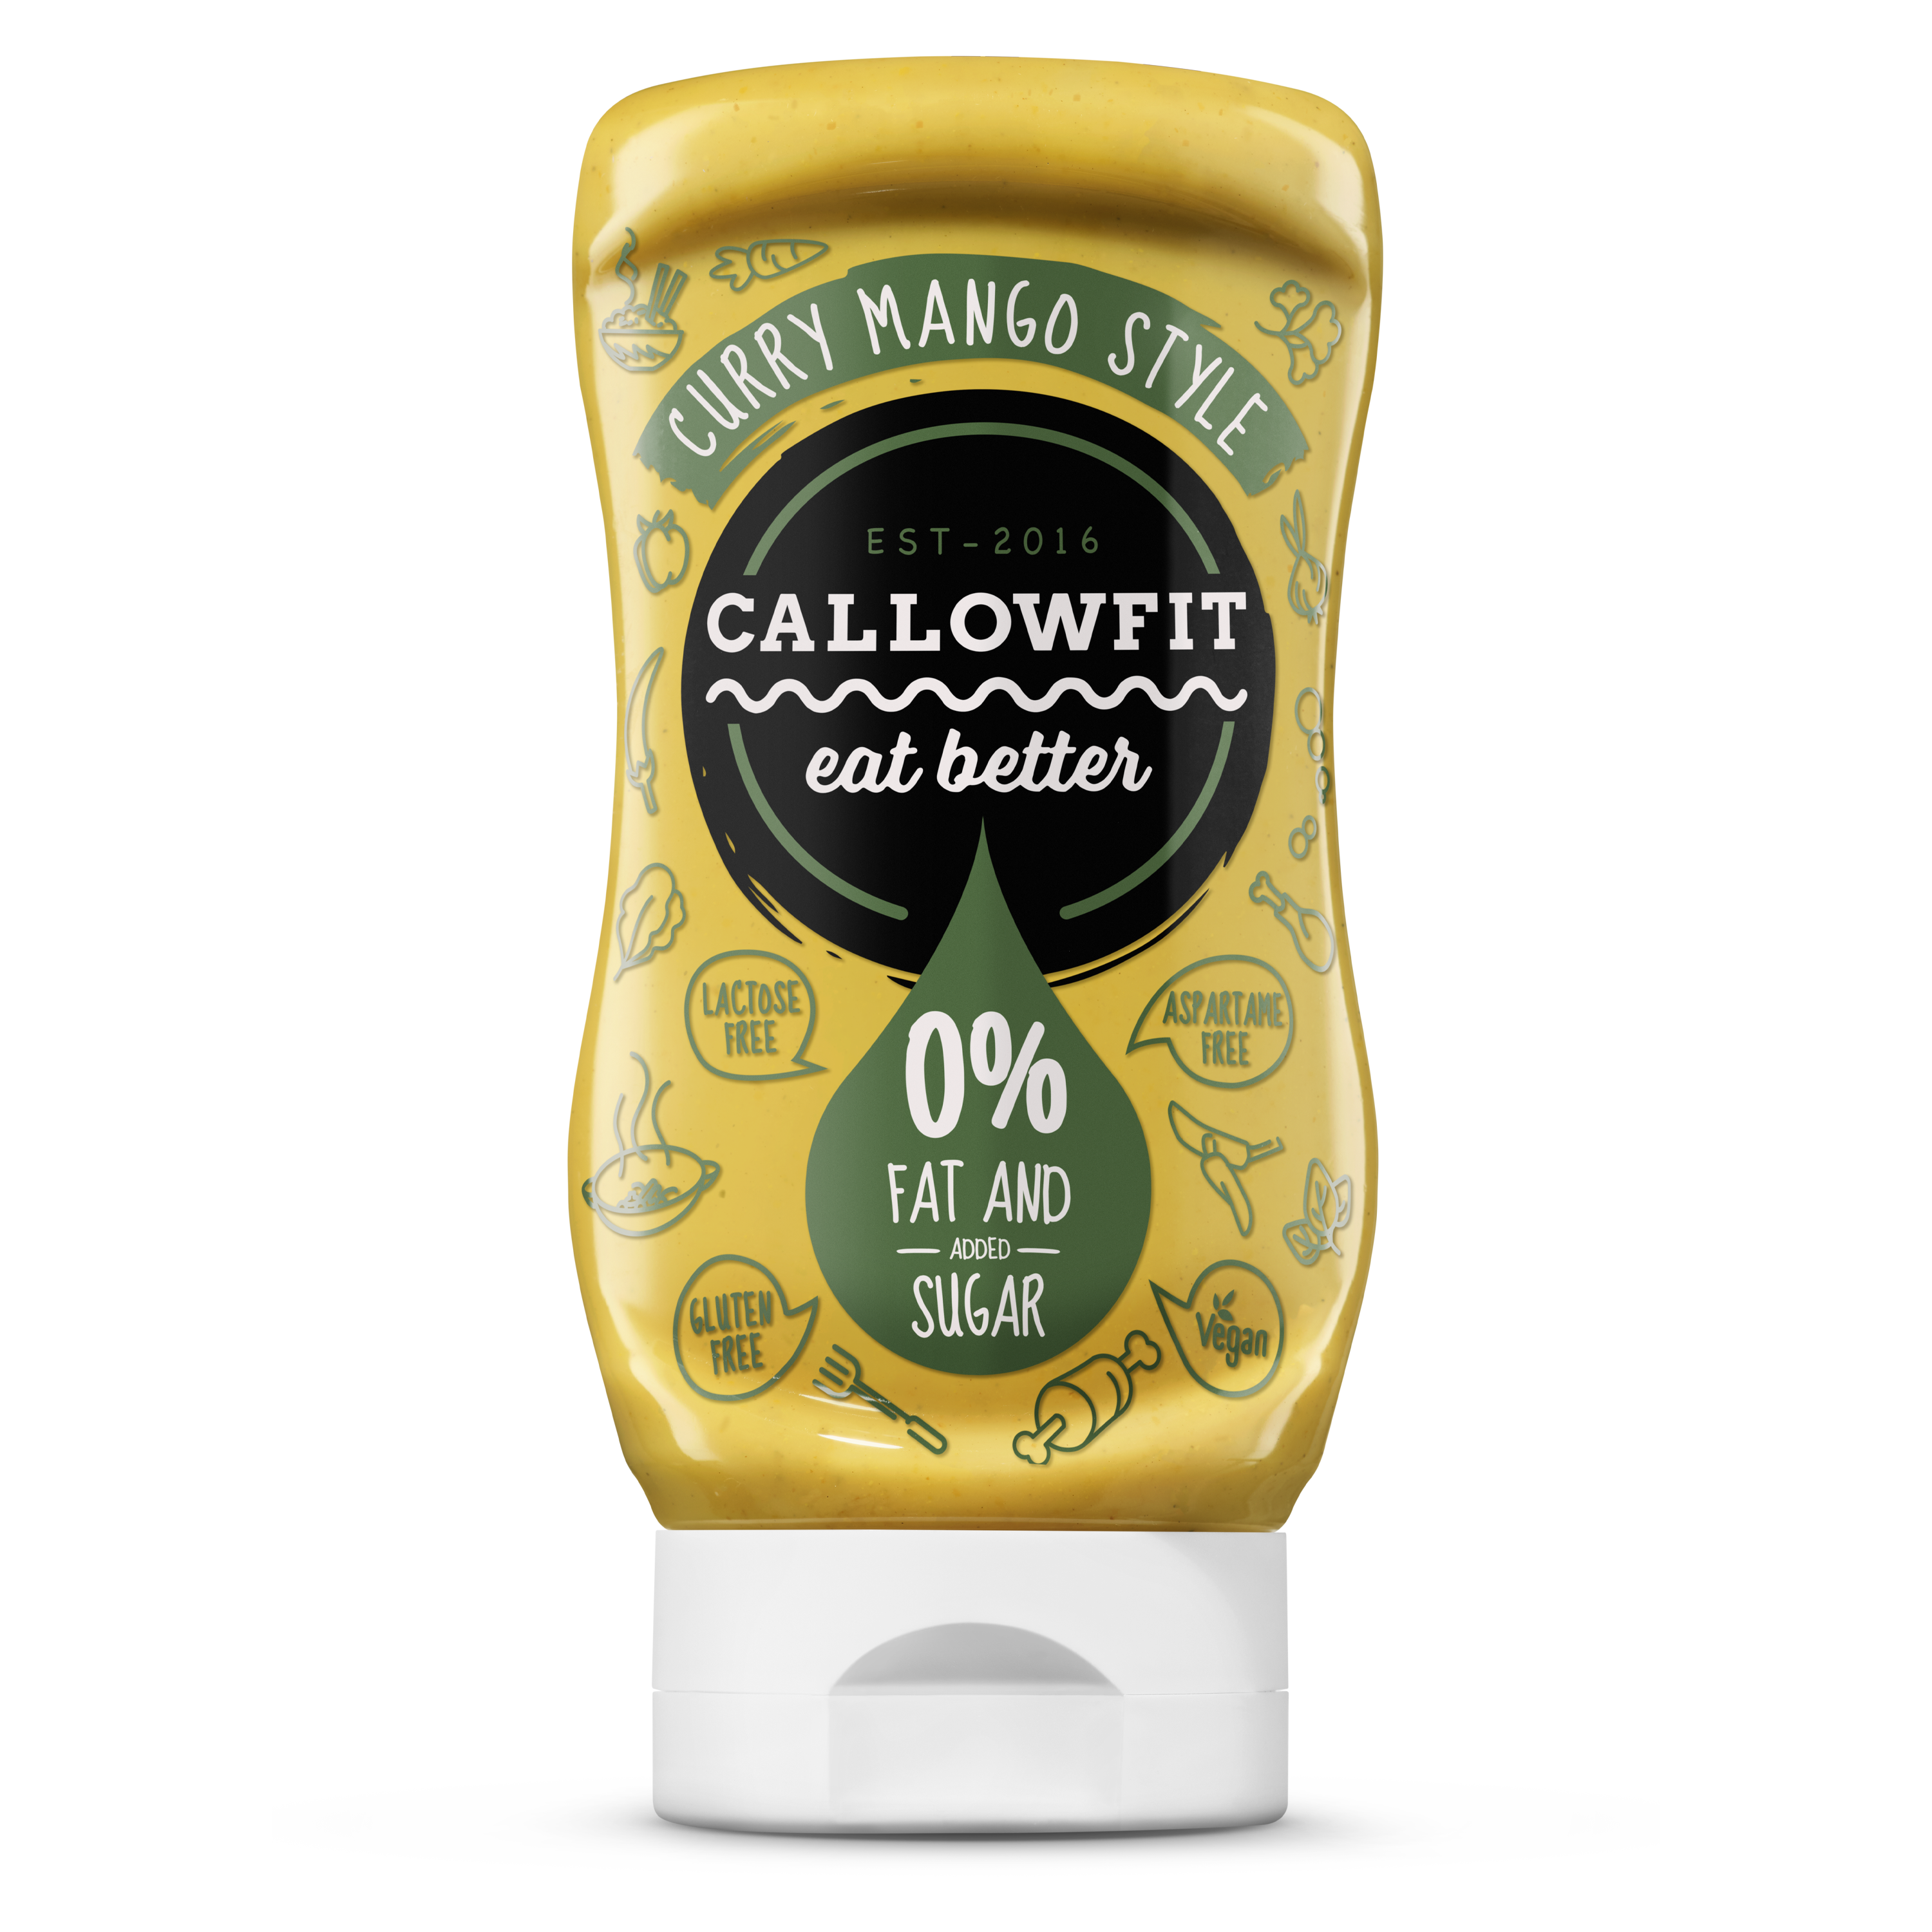 CALLOWFIT Sauce im Geschmack Curry Mango Style mit 0% Fett und Zucker in einer Tube mit bunten Aufdruck.